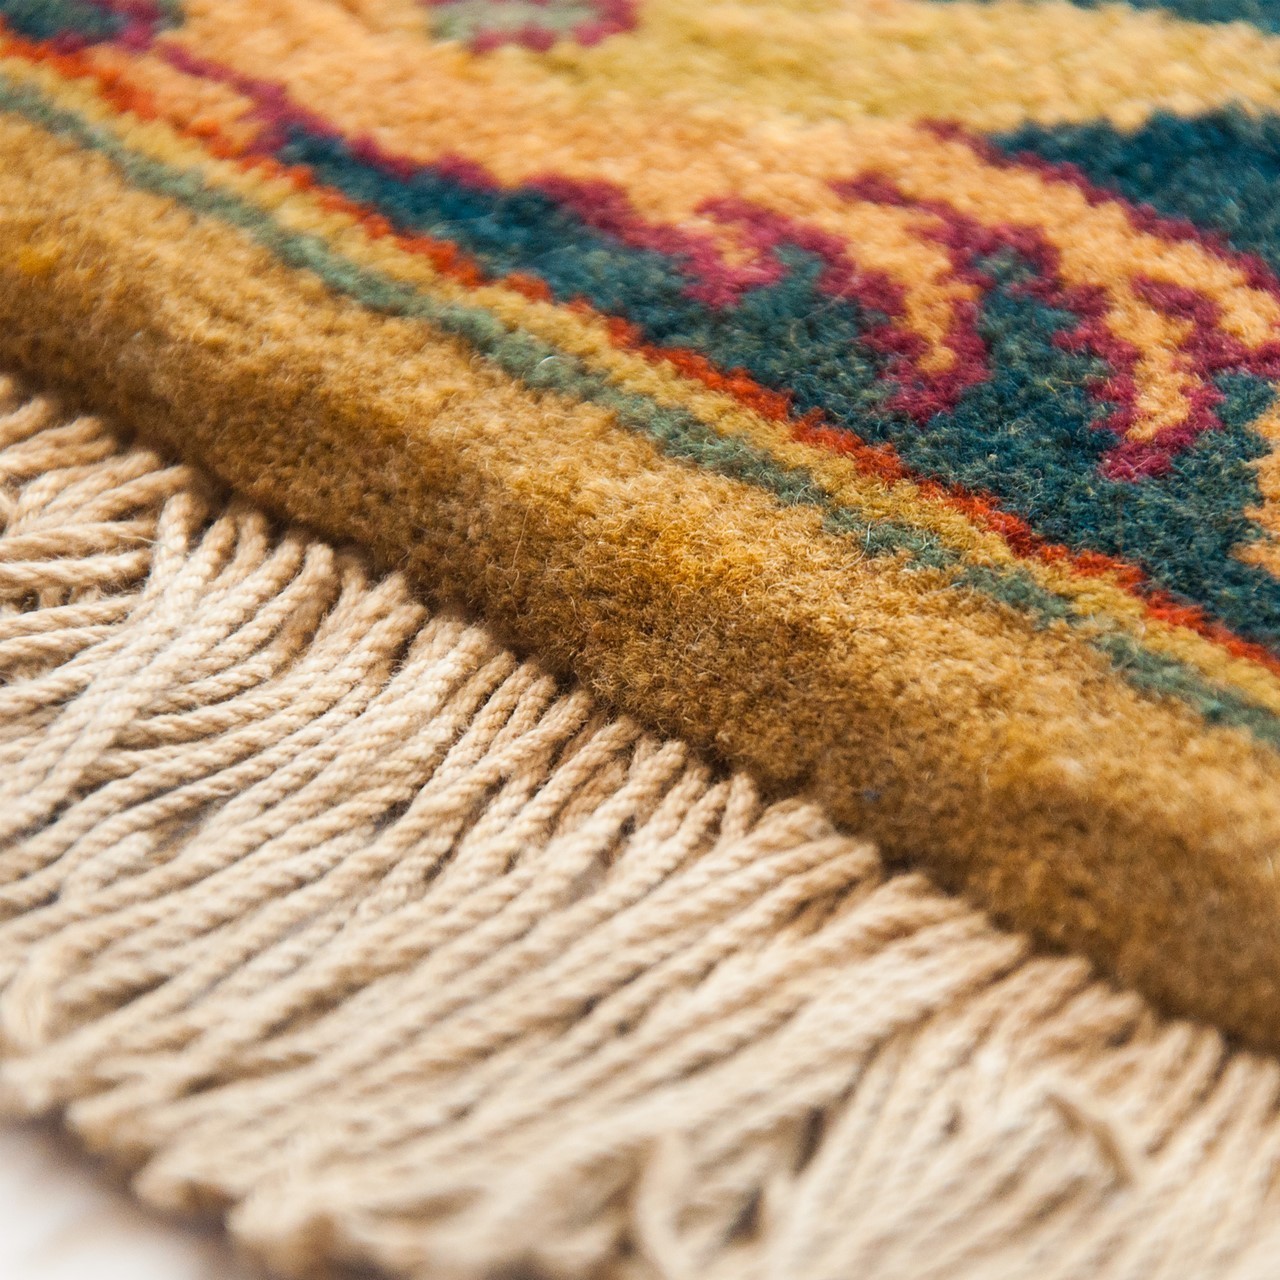 Ferahan Carpet Ref 101987